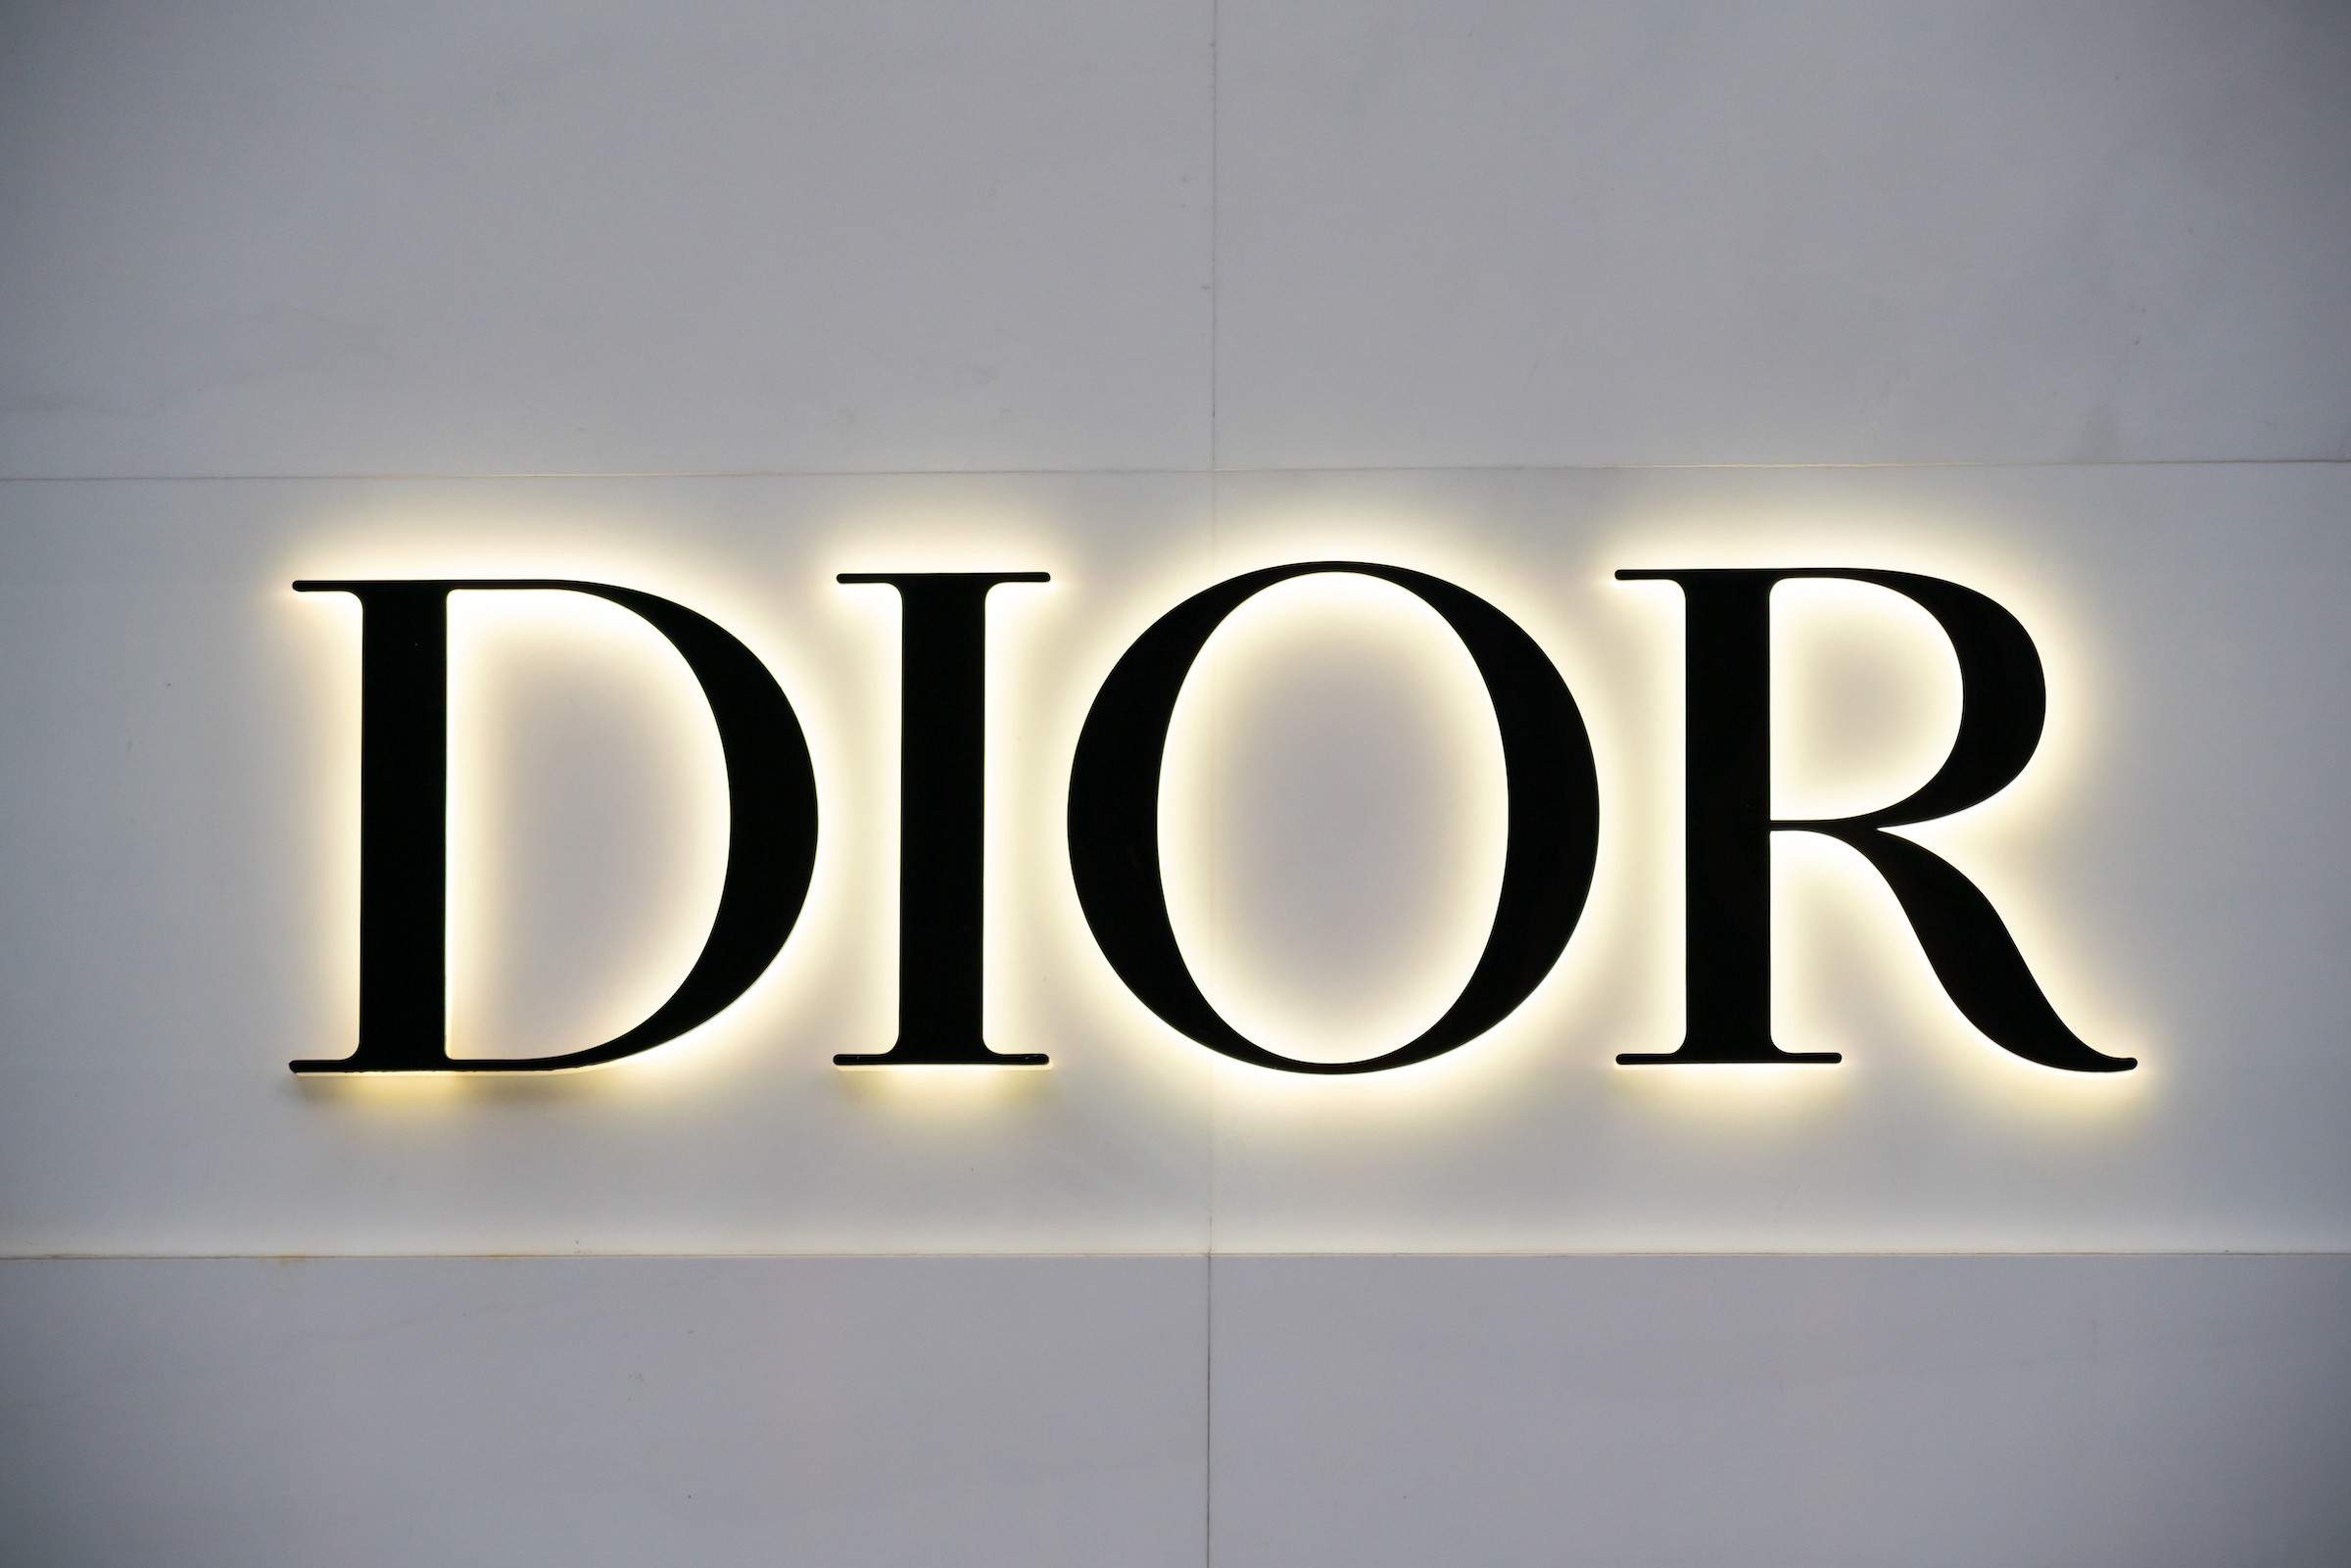 Thương hiệu Dior luôn mang đến những sản phẩm giày chất lượng cao và đầy tính thời trang. Sản phẩm này không chỉ đẹp mắt và sang trọng, mà còn giúp bạn tự tin trong mỗi bước di chuyển.